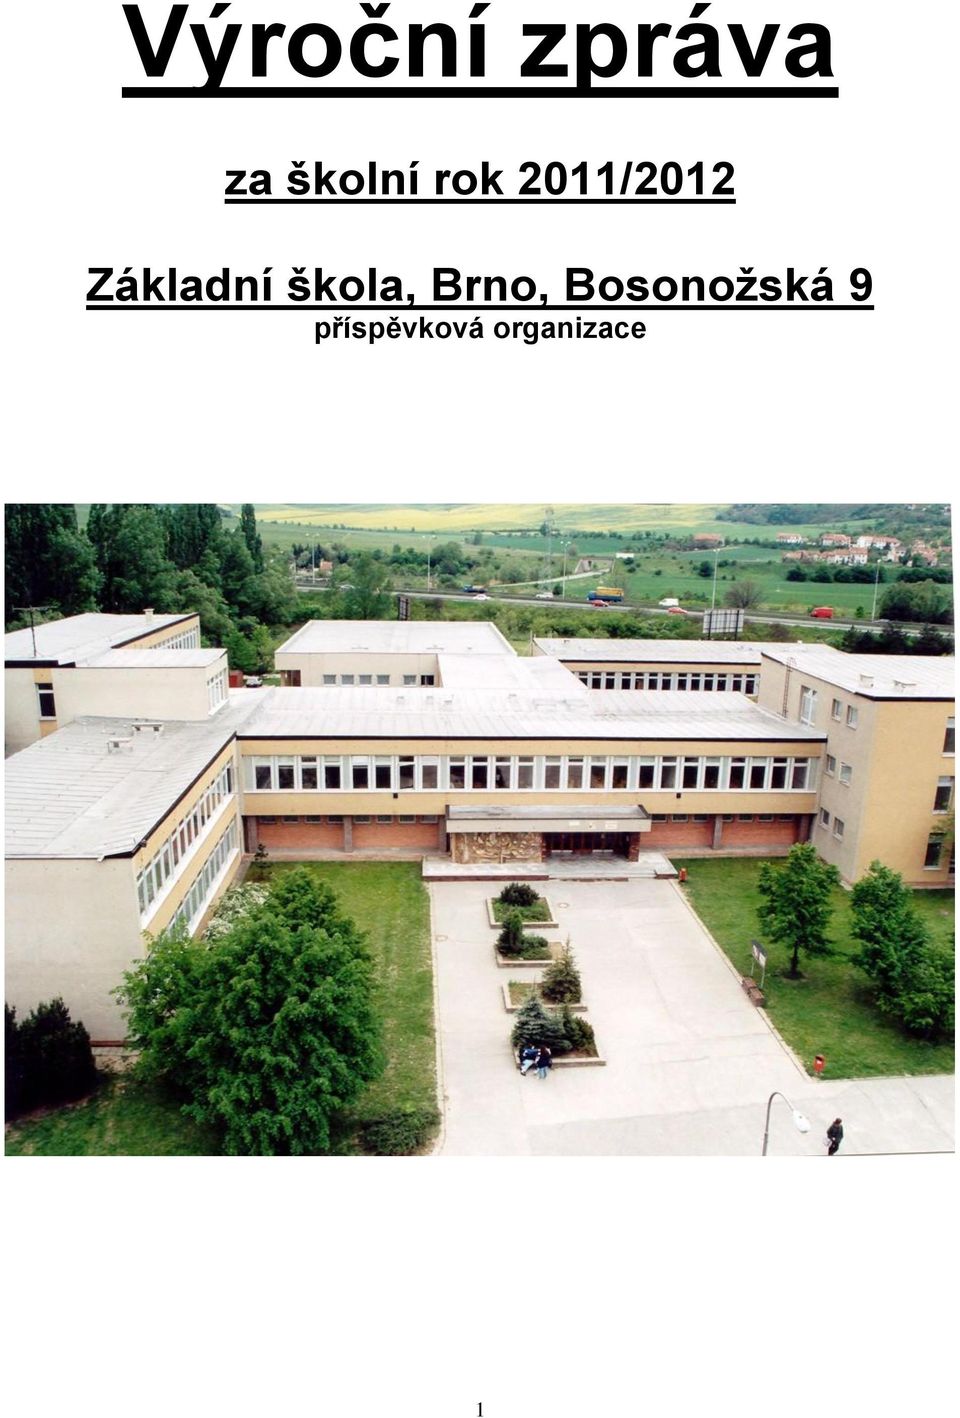 škola, Brno, Bosonožská